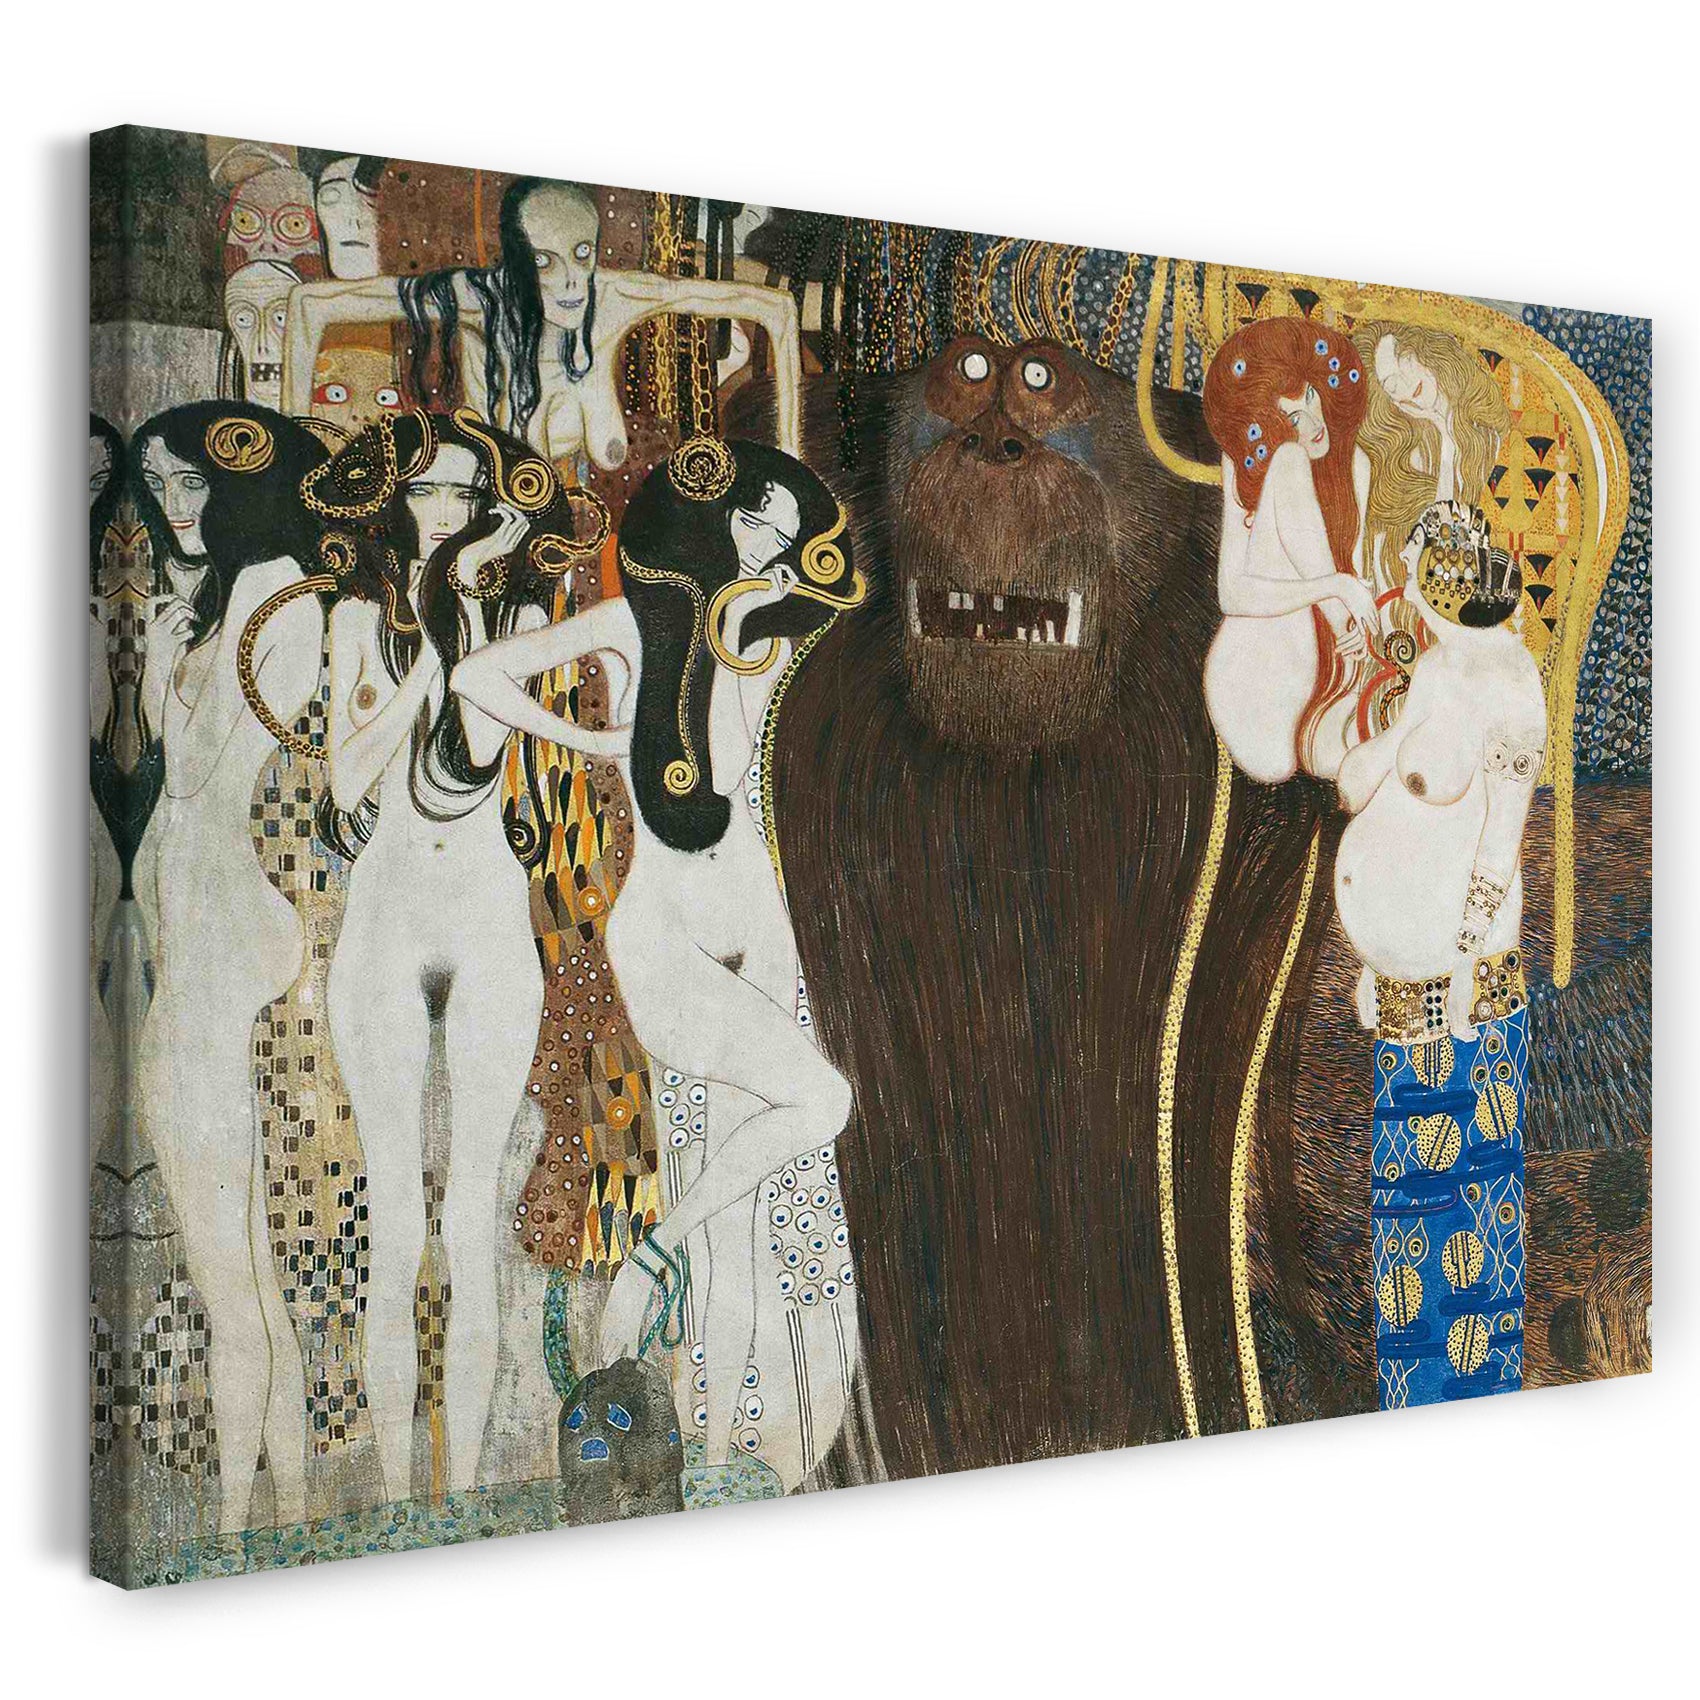 Leinwandbild Gustav Klimt Beethovenfries 1901 4245